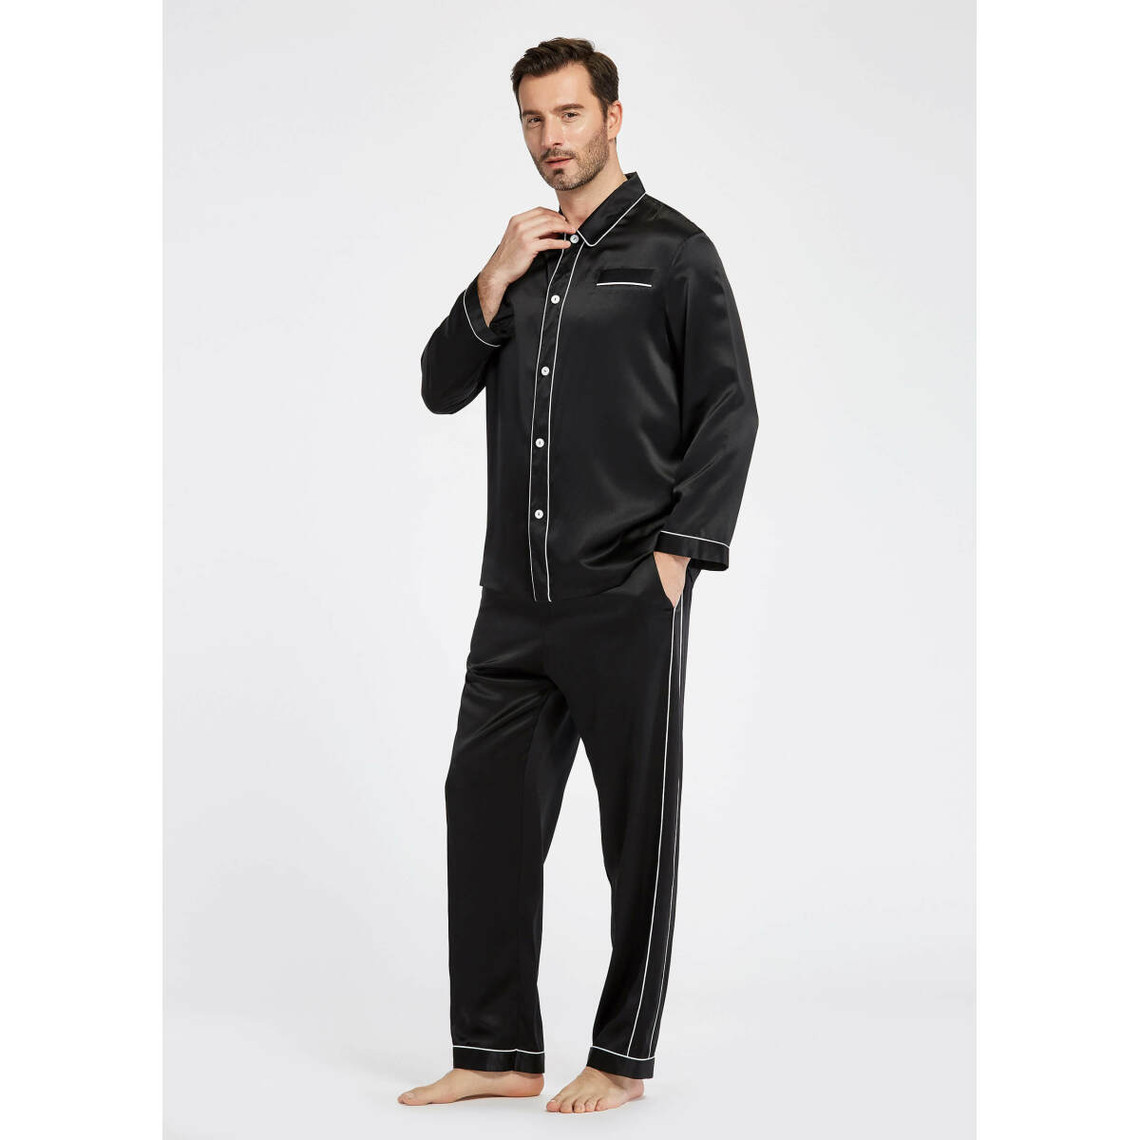 Pyjama en Soie Homme Patalons Tendance noir